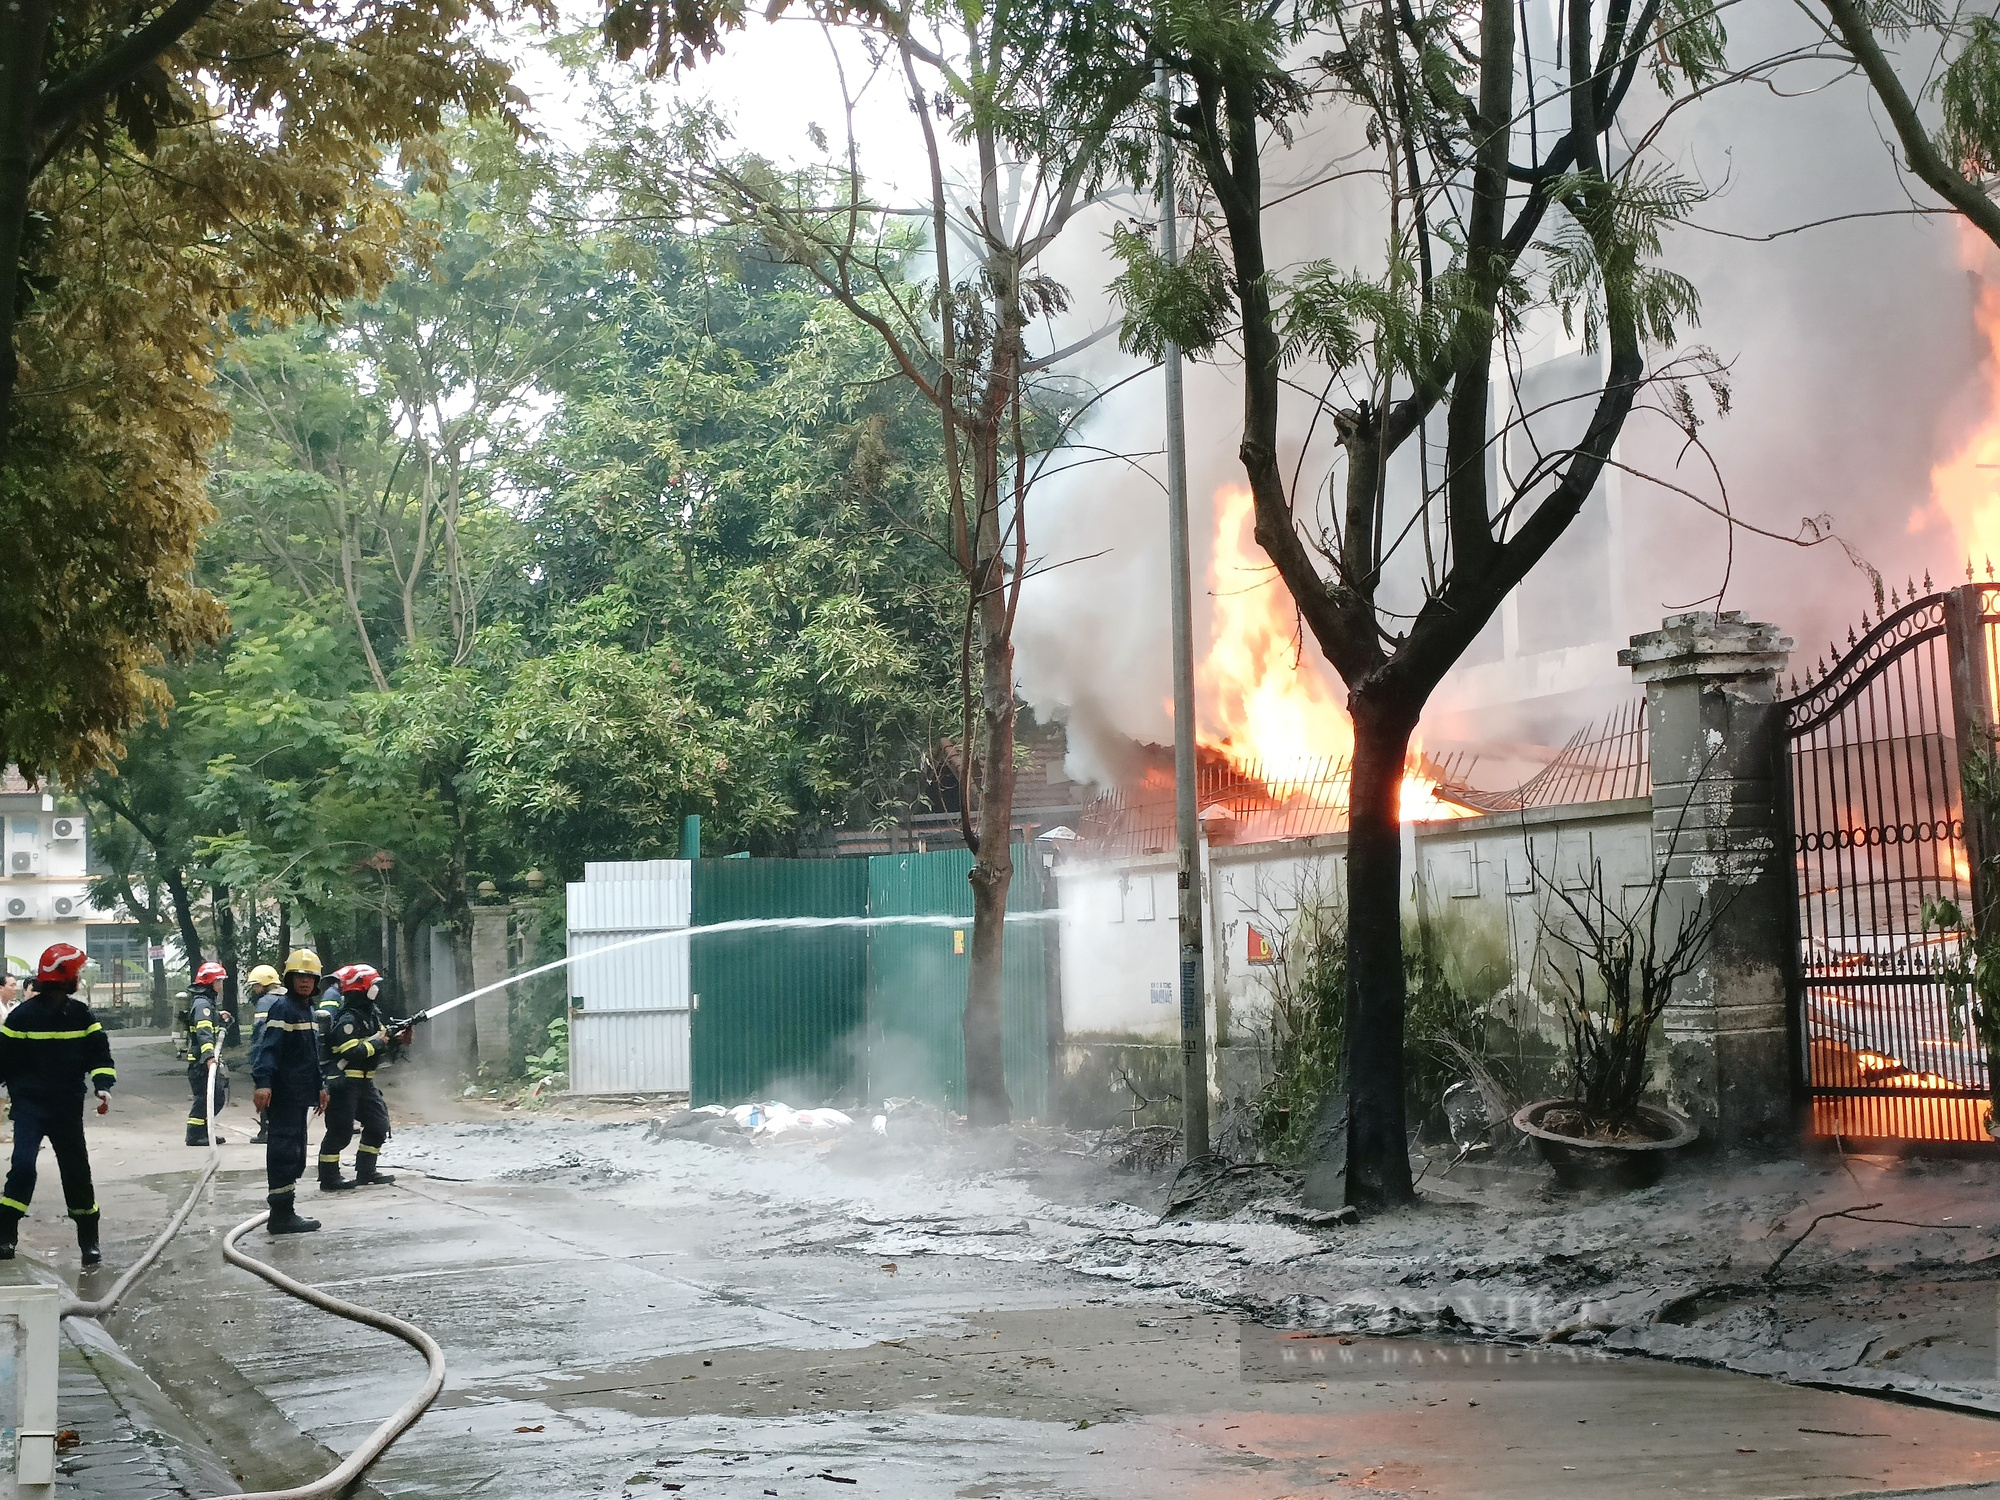 Đang cháy lớn tại xưởng nhựa ở Khu Đô thị Pháp Vân, Hà Nội - Ảnh 8.